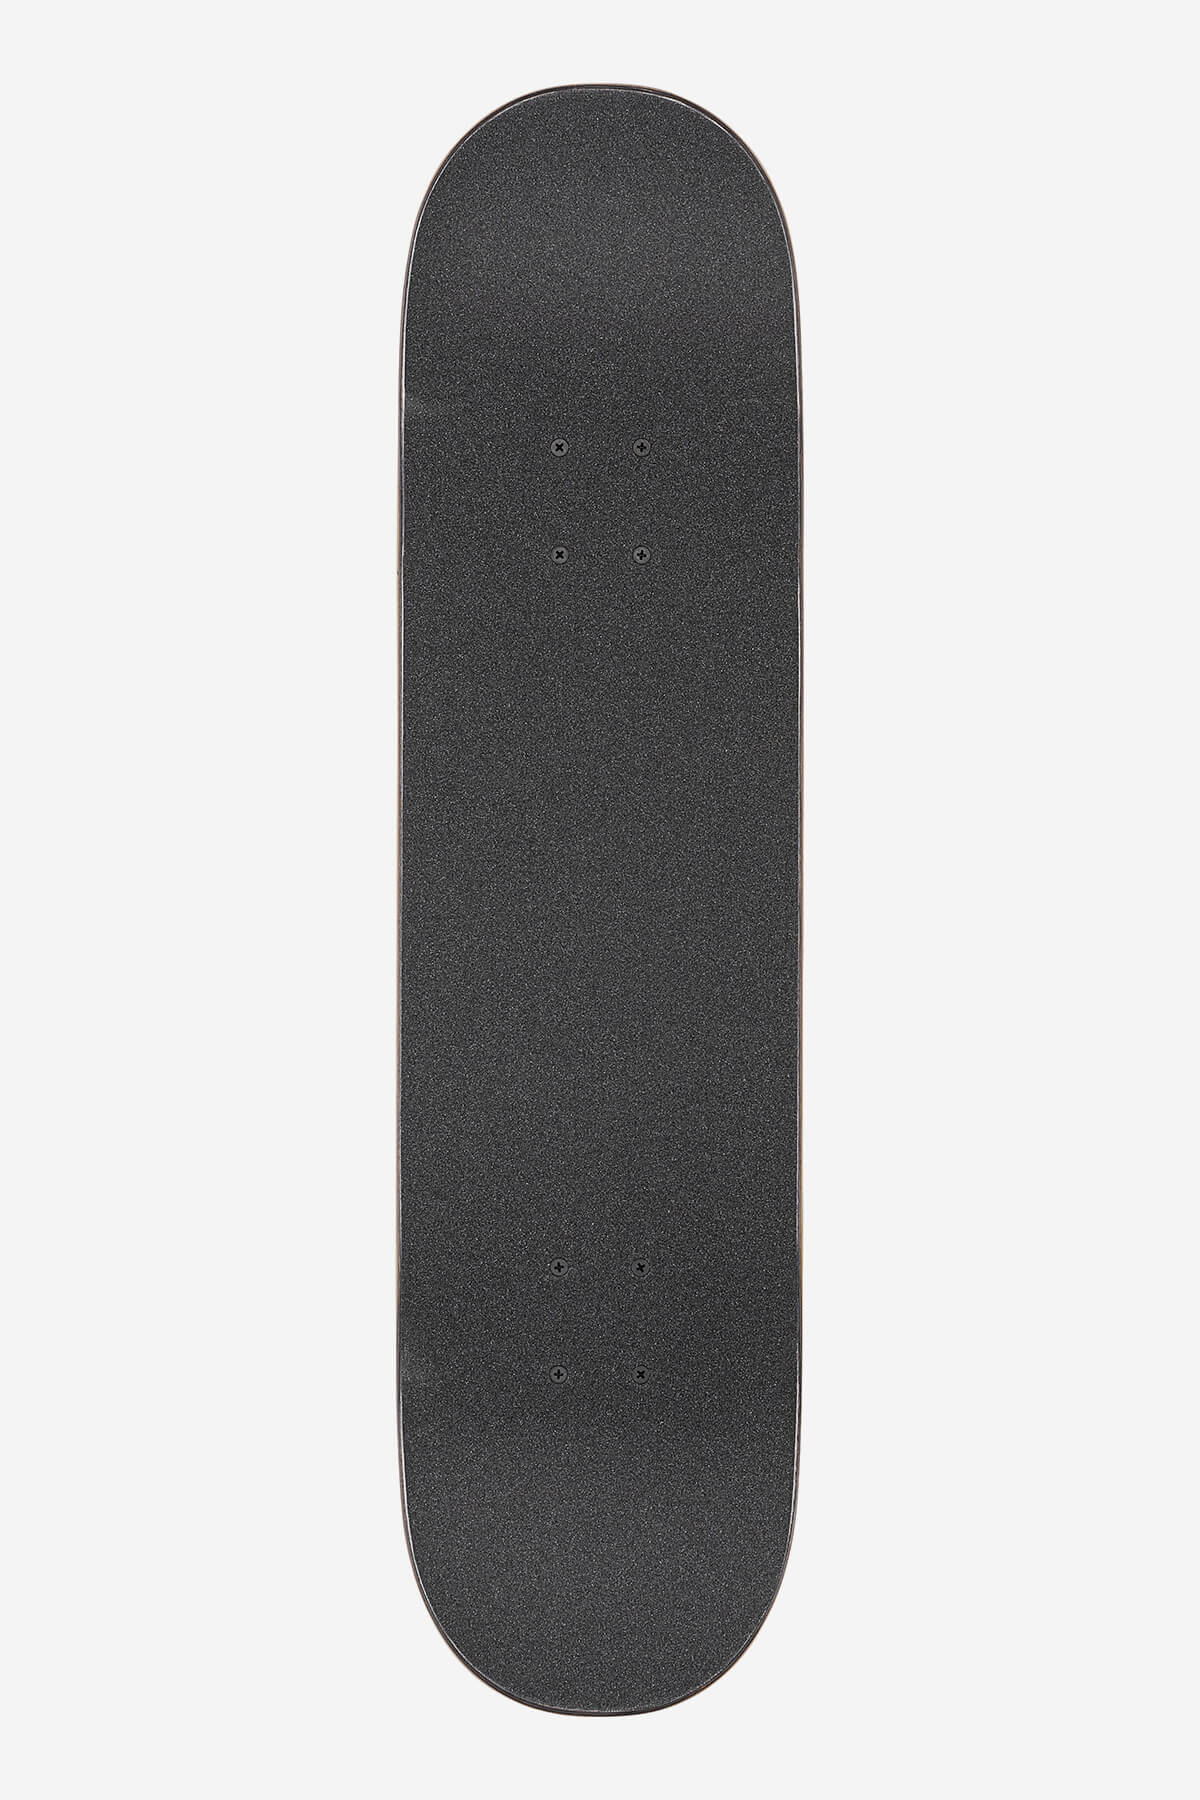 g1 natives black copper 8.0" complete skateboard